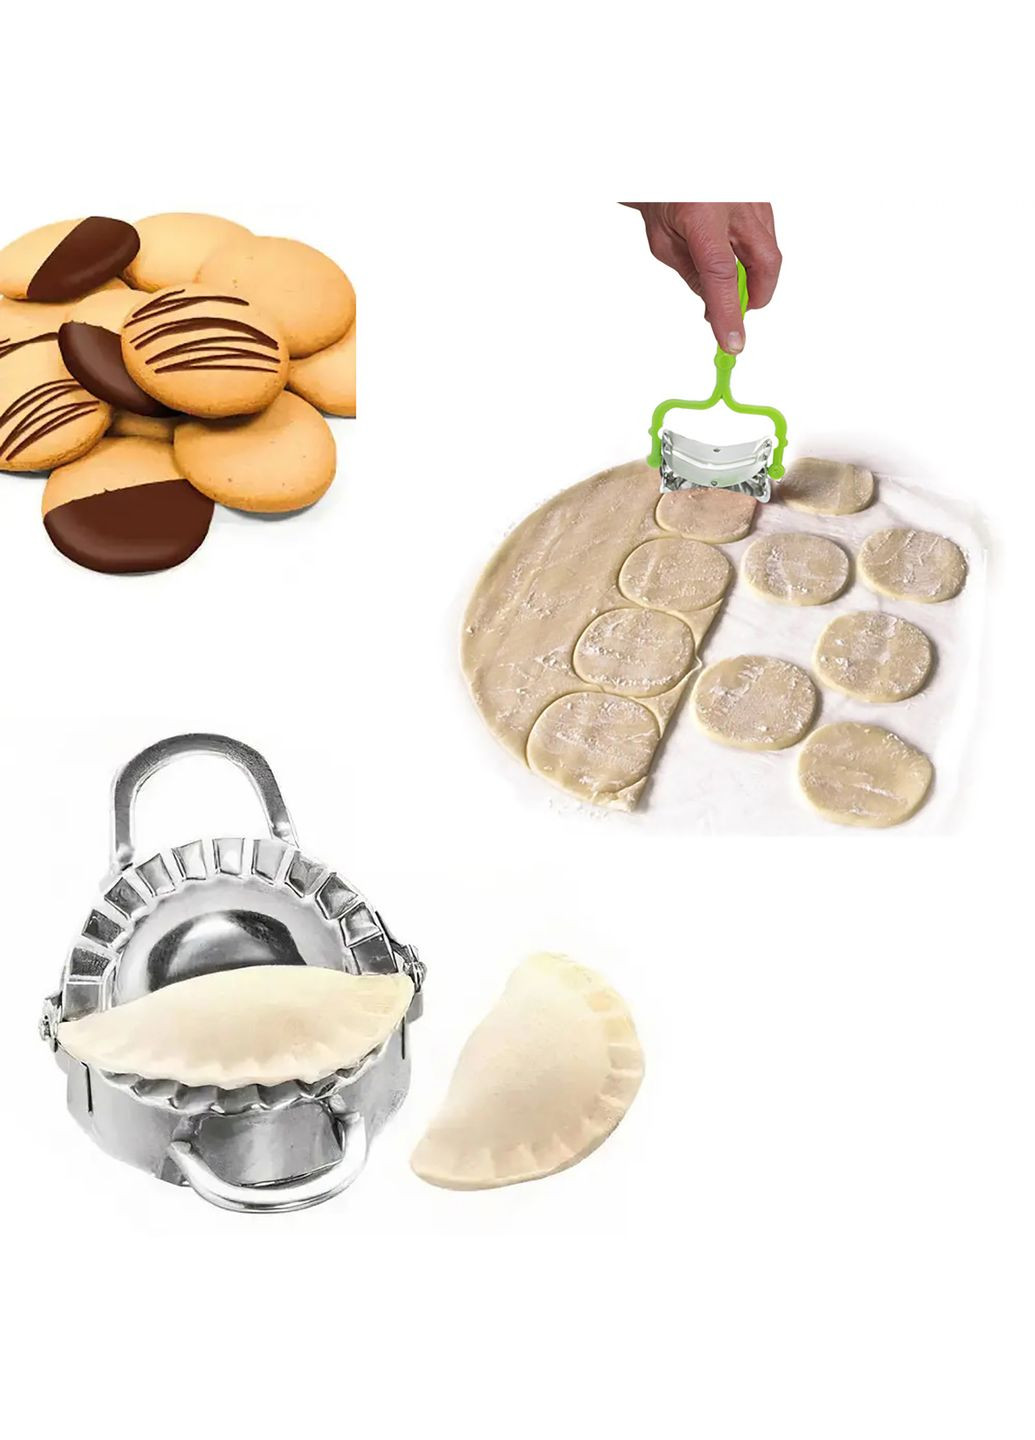 Форма для лепки вареников с роликовым ножом для вырезания из теста кругов для вареников, пельменей, печенья A-Plus (263931716)